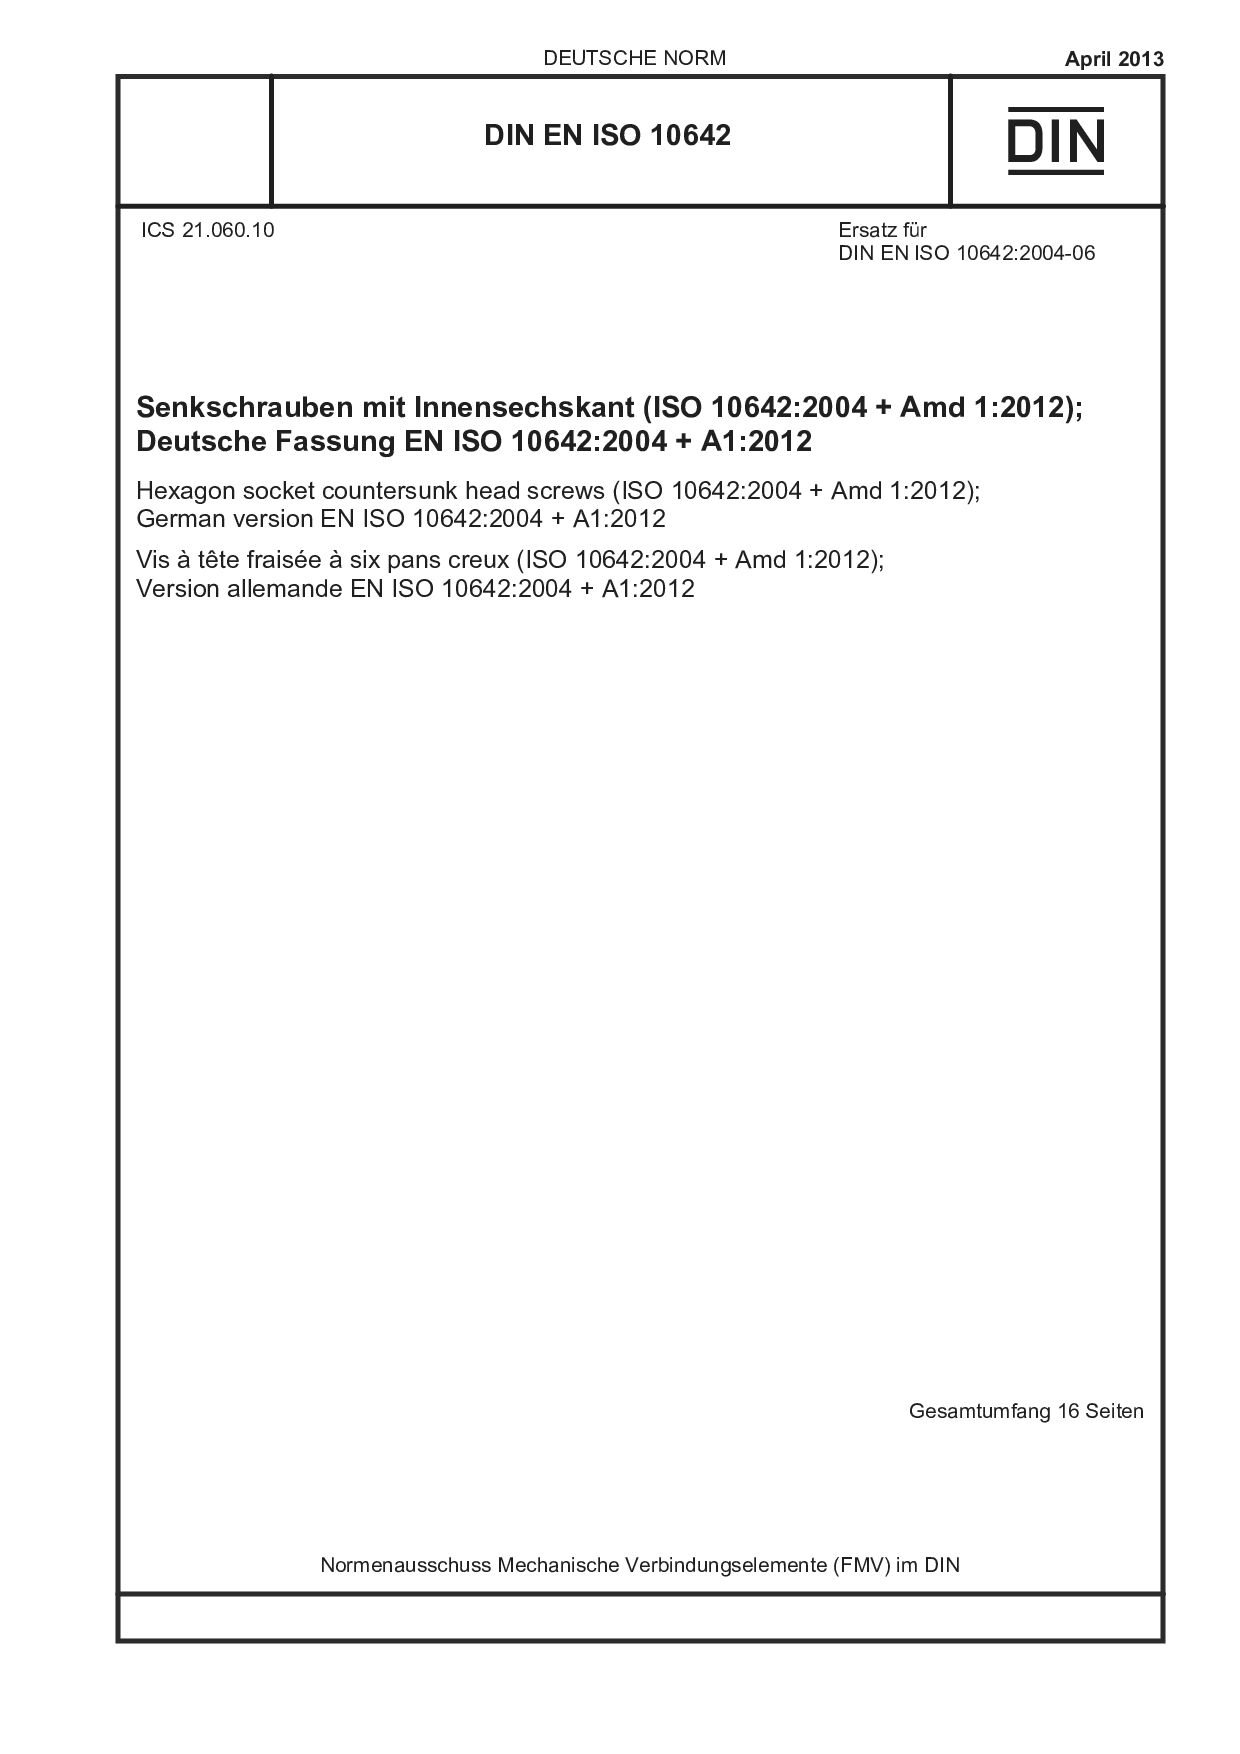 DIN EN ISO 10642:2013封面图